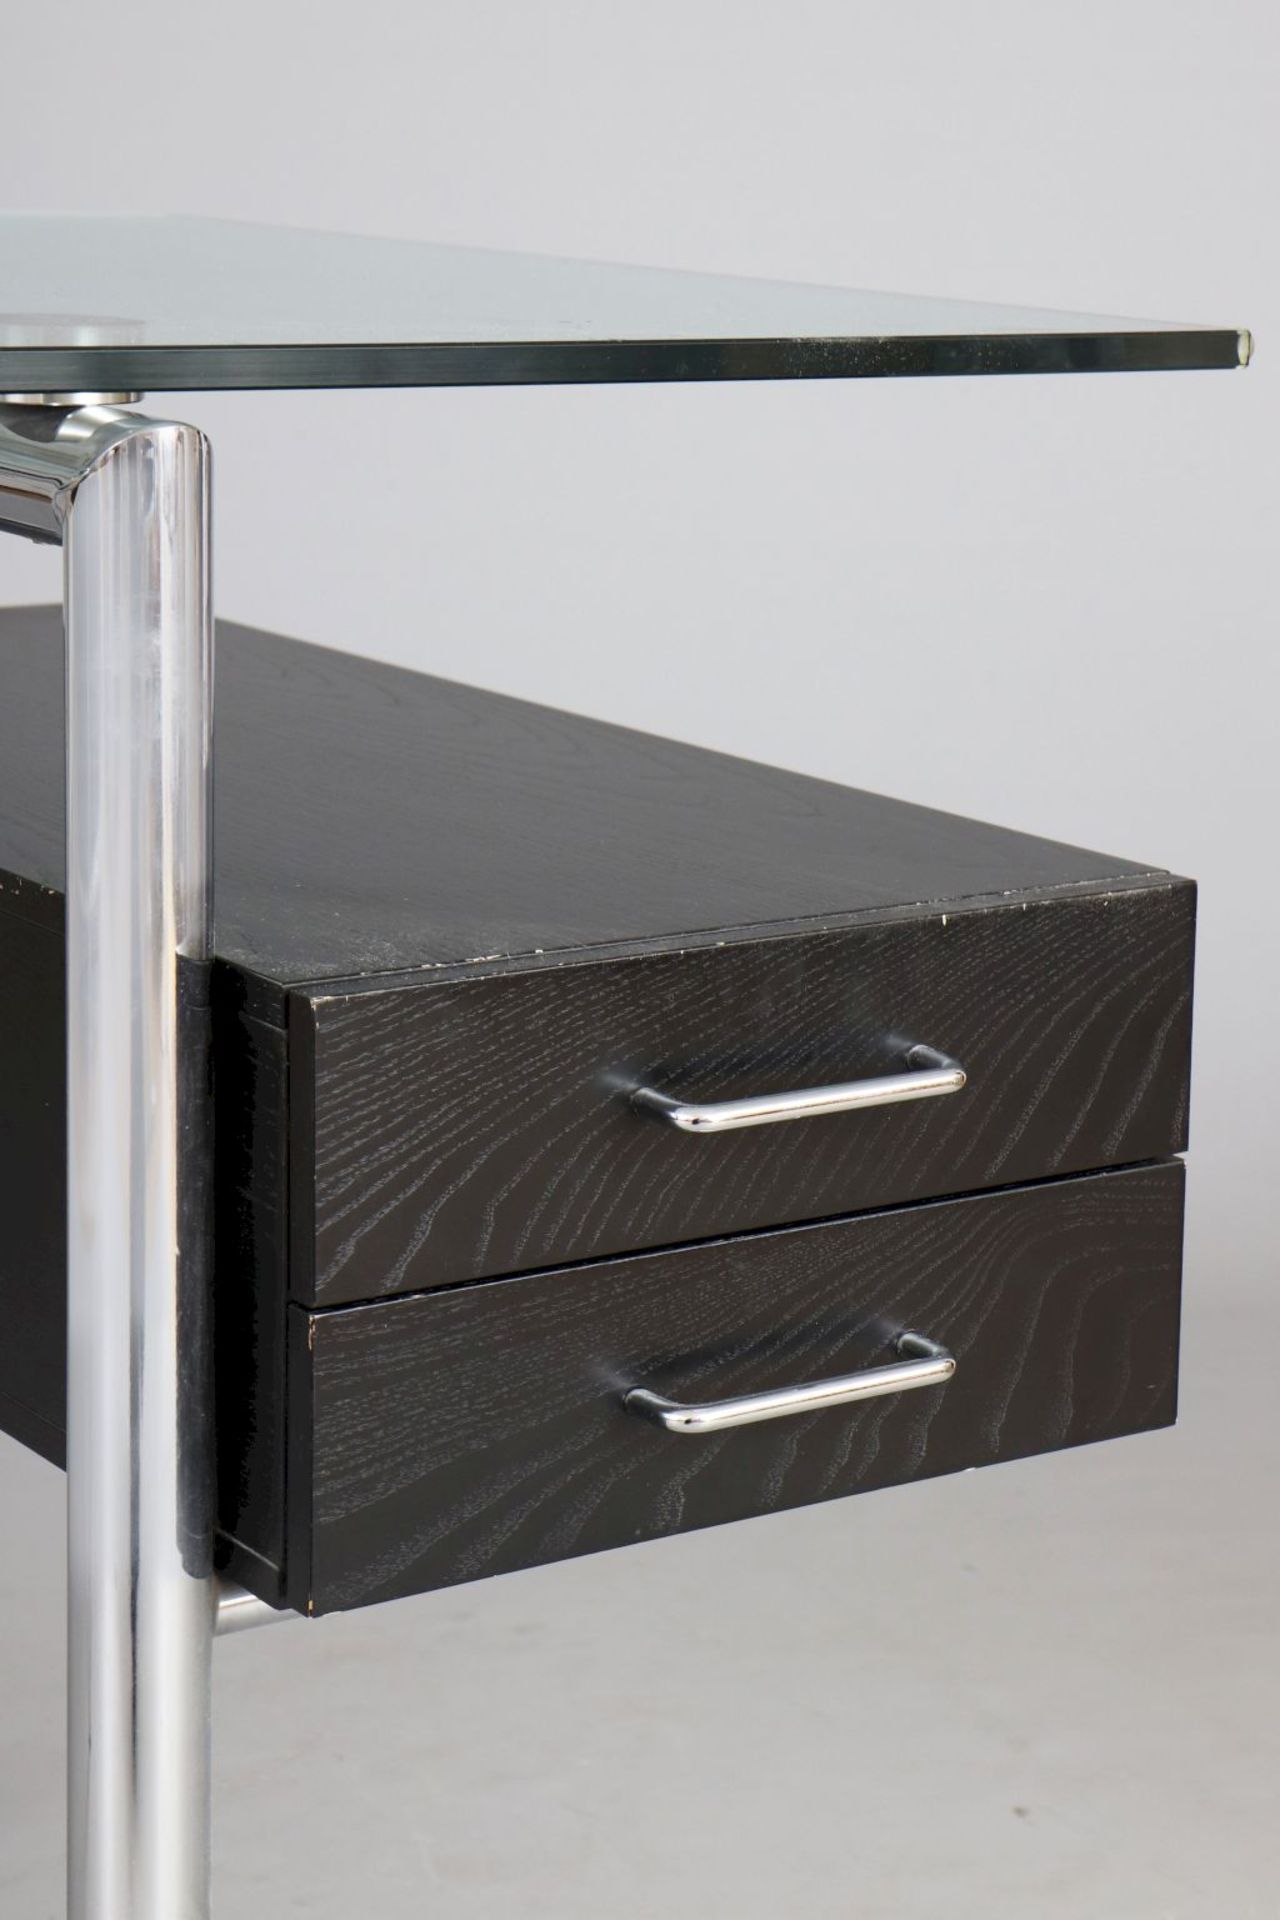 MIRTO Schreibtisch im Stile des Bauhausverchromtes Stahlrohr, Klarglasplatte, 2-schübiger Schu - Image 4 of 4